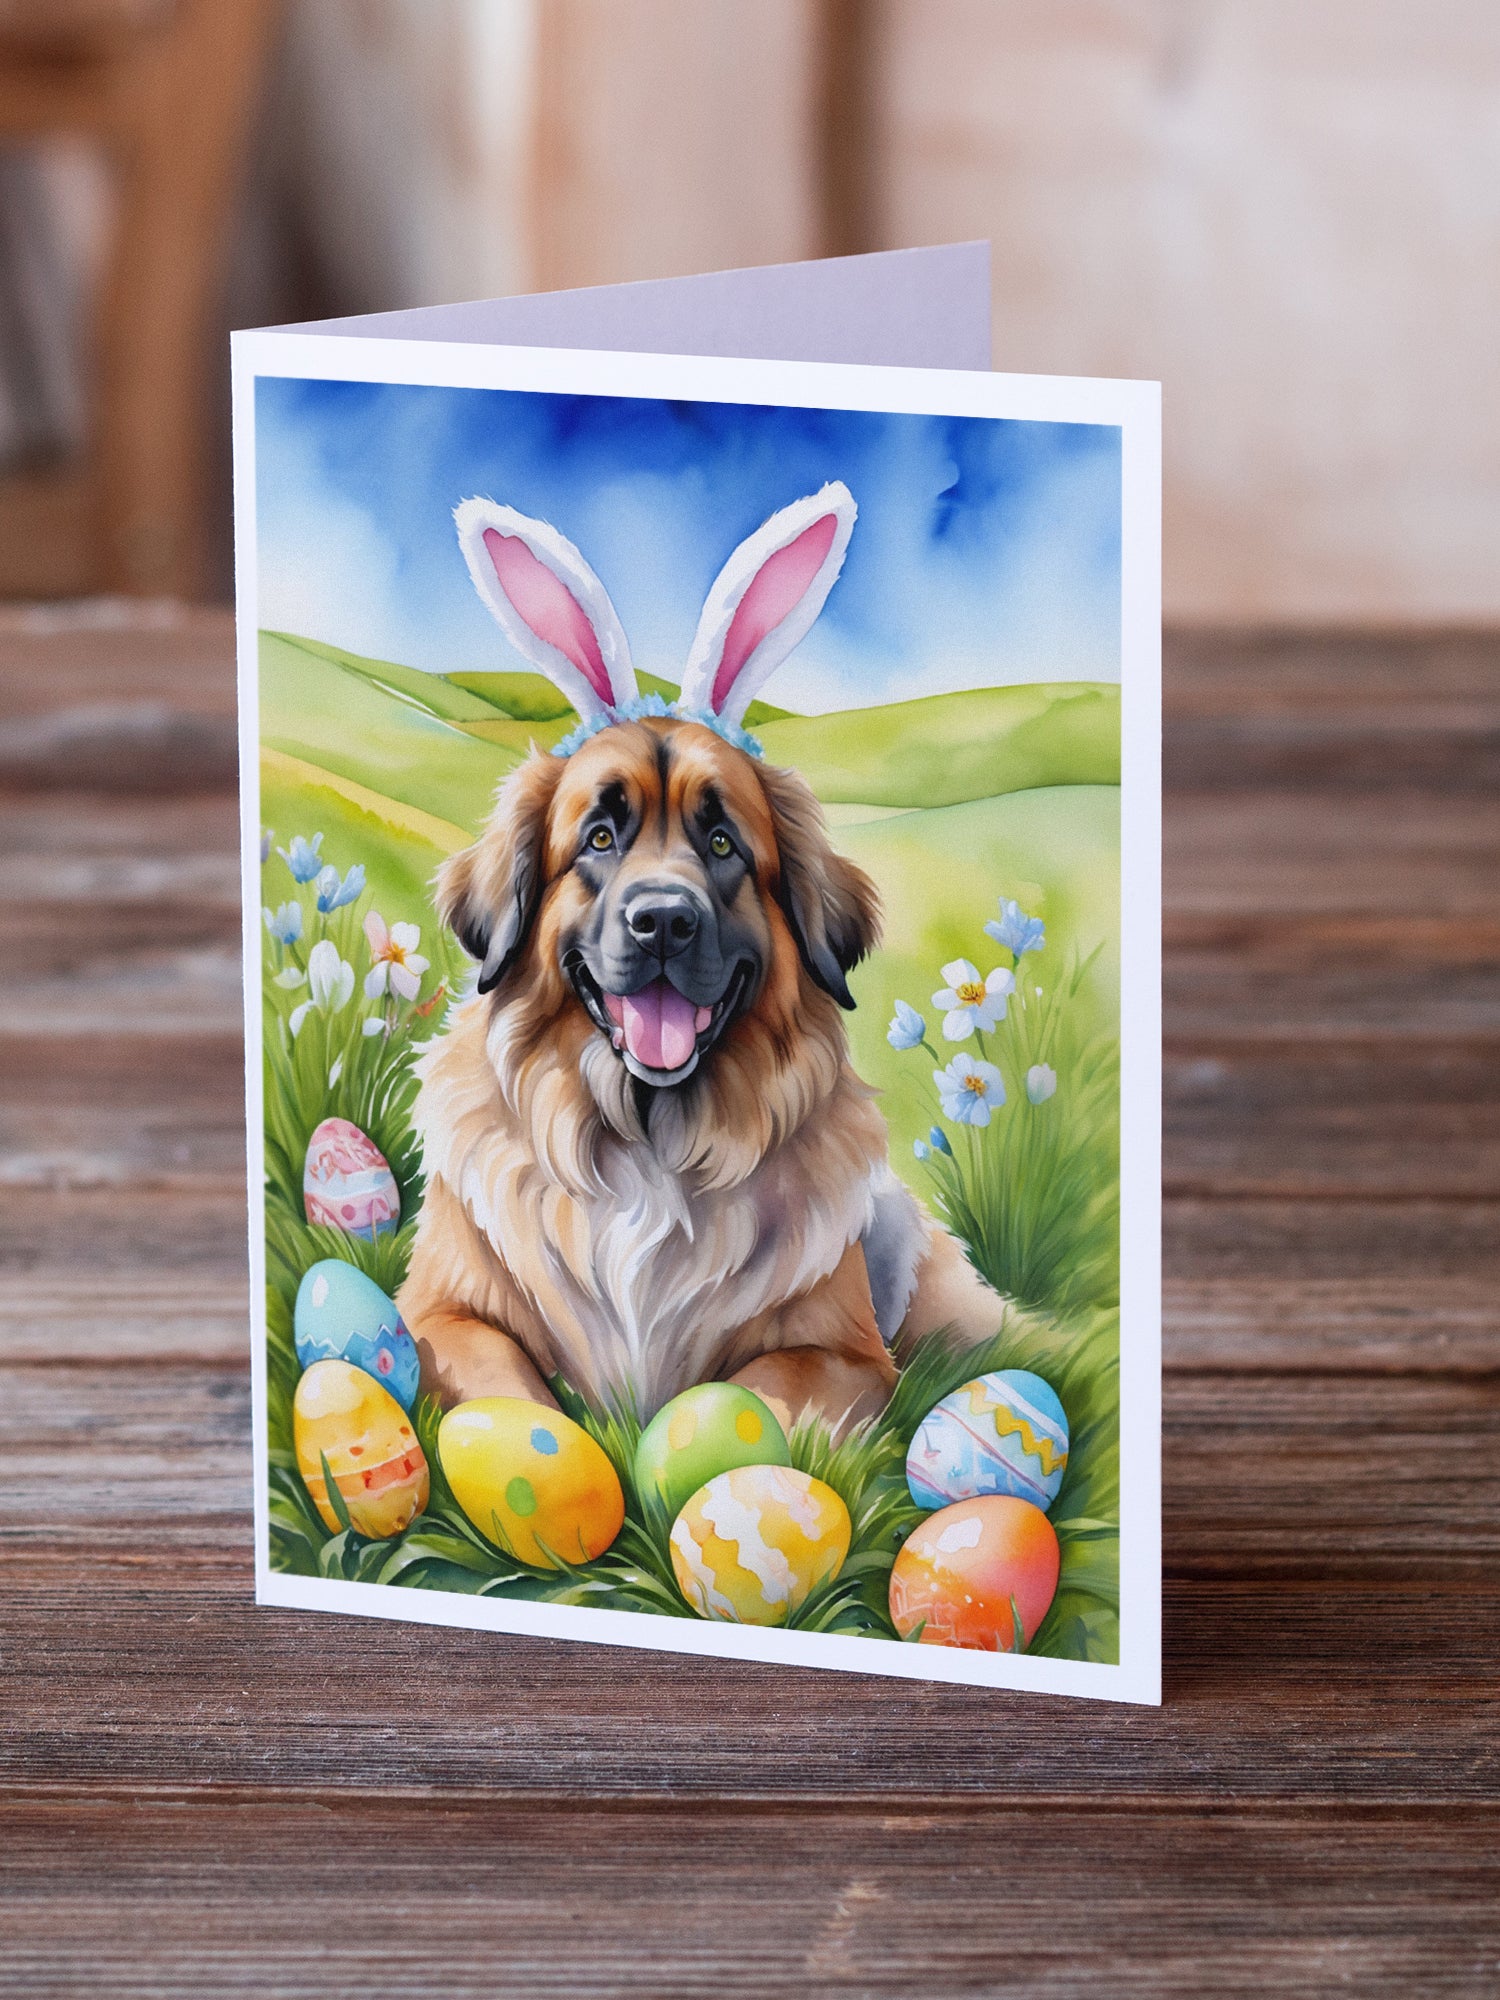 Leonberger Easter Egg Hunt Greeting Cards Pack of 8